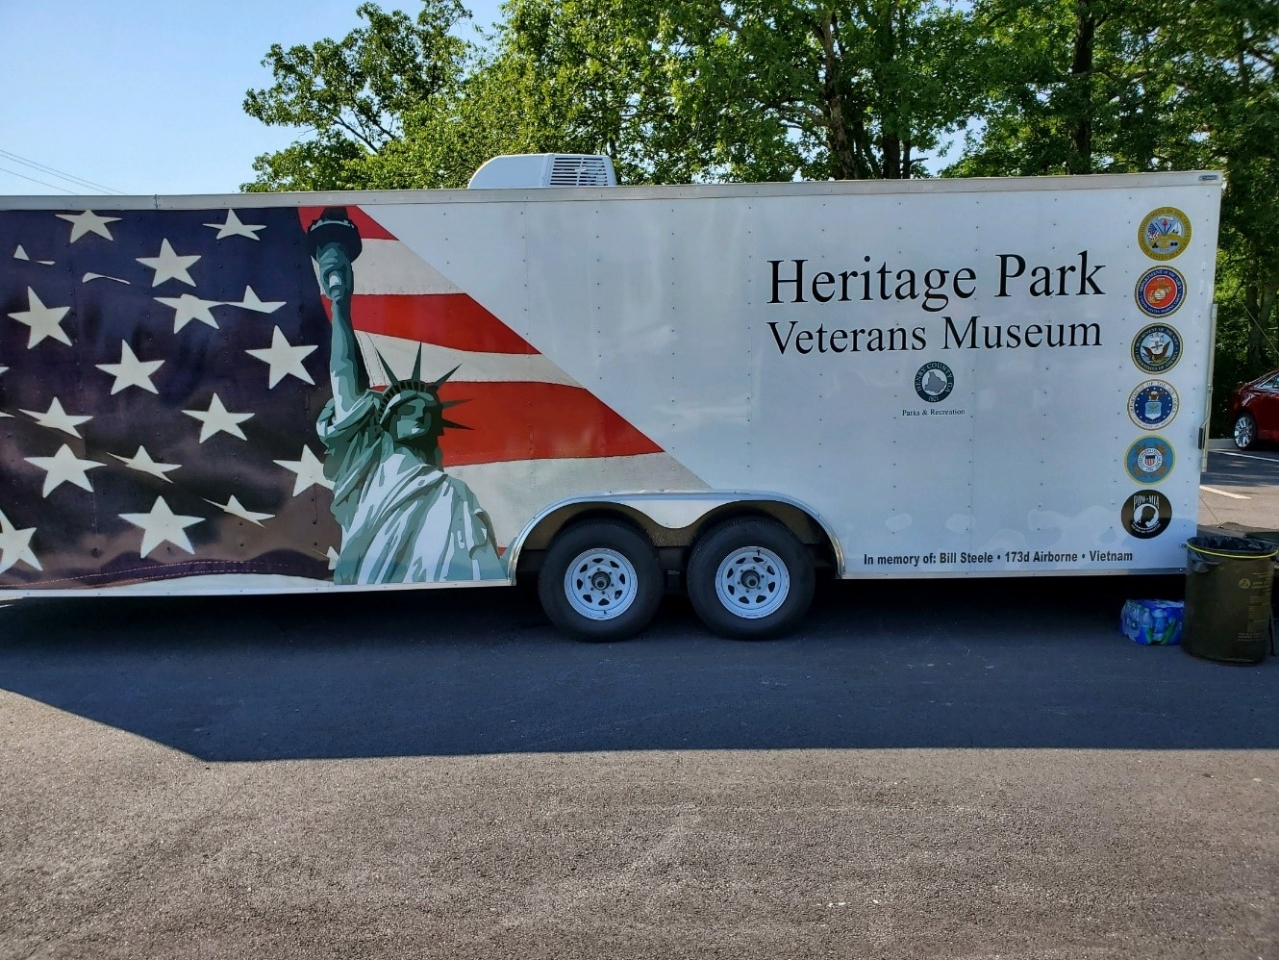 Heritage Park Veteran’s Museum from McDonough, GA. 